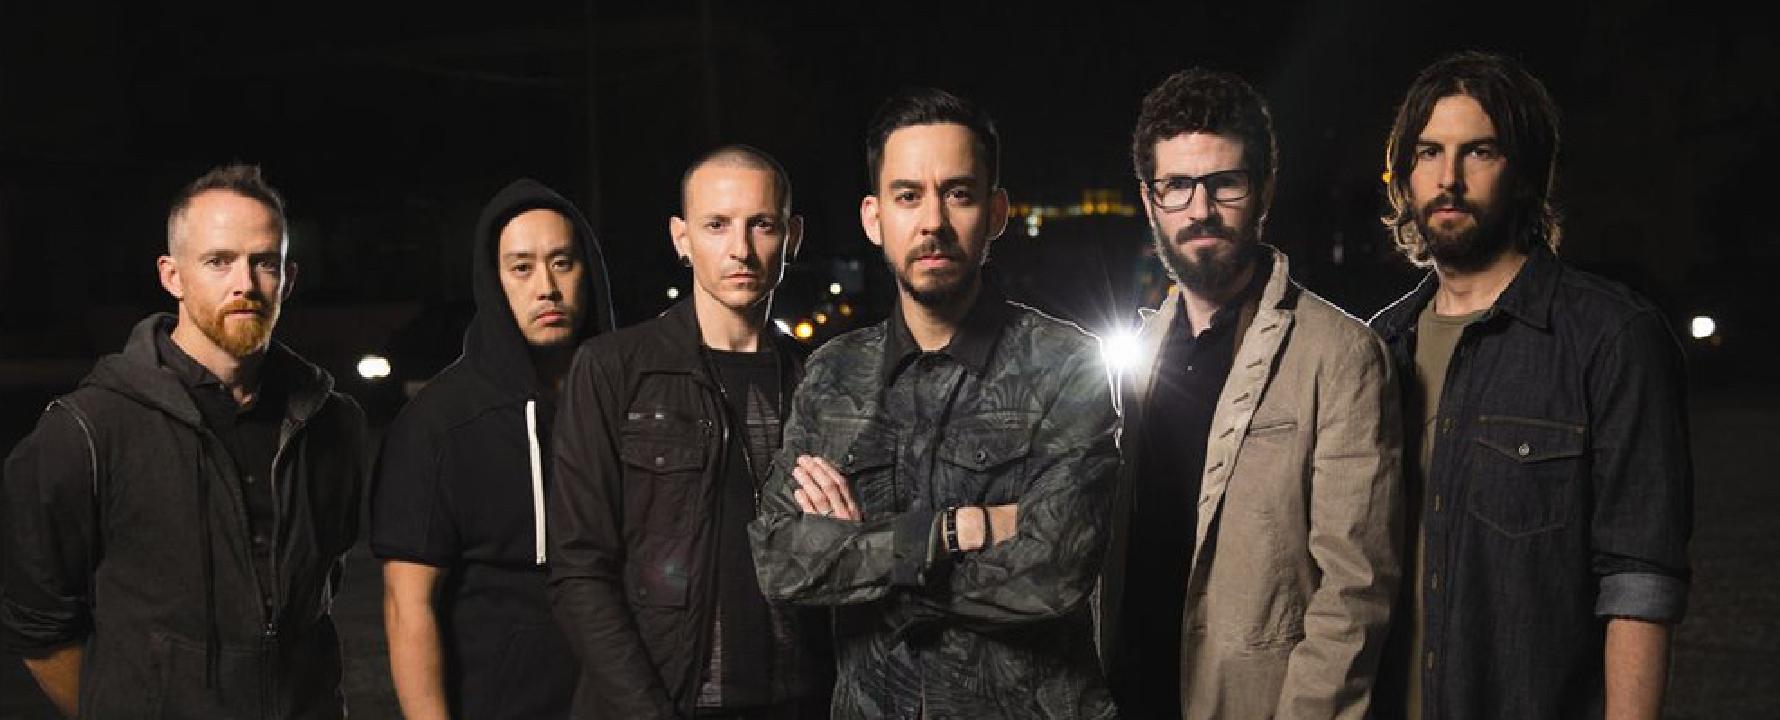 Fotografía promocional de Linkin Park